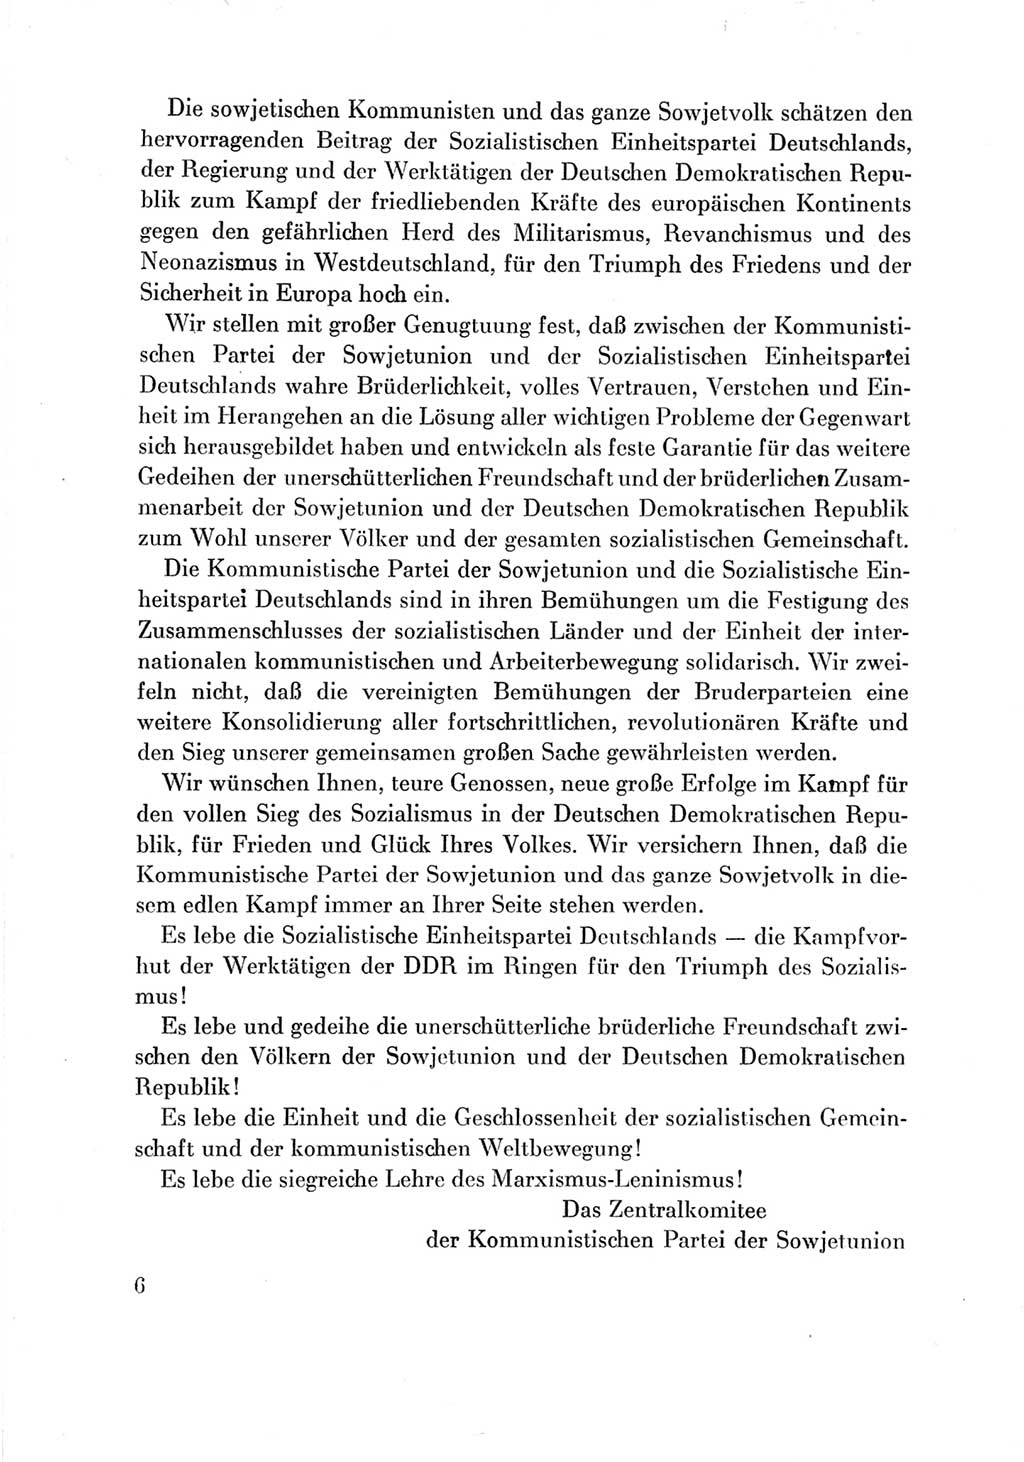 Protokoll der Verhandlungen des Ⅶ. Parteitages der Sozialistischen Einheitspartei Deutschlands (SED) [Deutsche Demokratische Republik (DDR)] 1967, Band Ⅲ, Seite 6 (Prot. Verh. Ⅶ. PT SED DDR 1967, Bd. Ⅲ, S. 6)